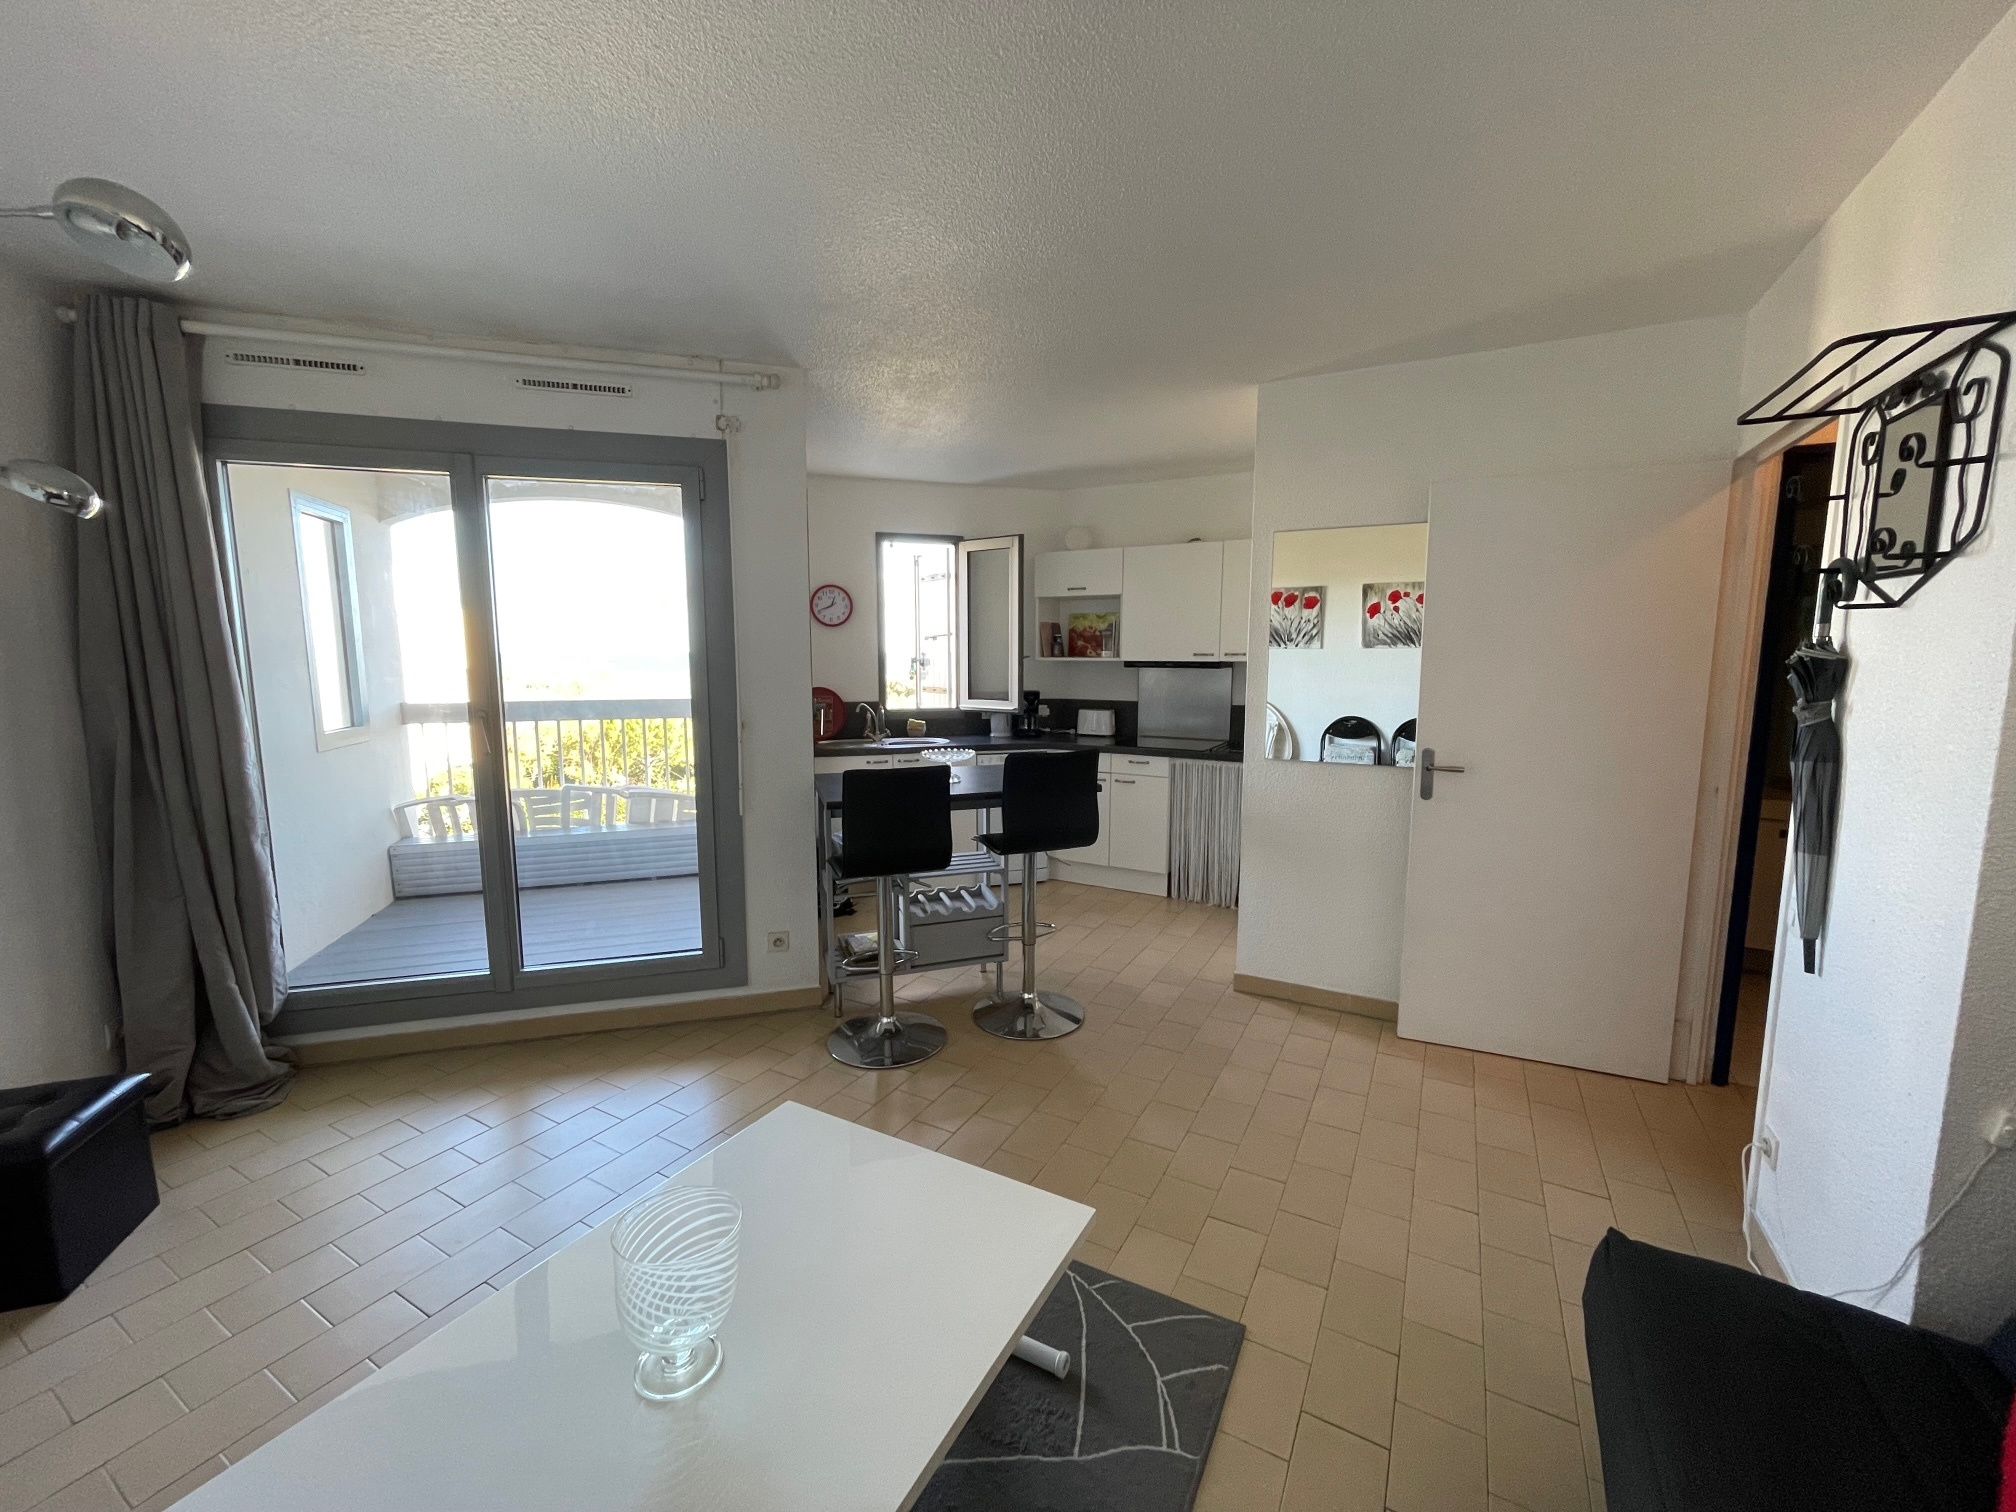 À vendre appartement de 30m2 à st cyprien plage (66750) - Photo 11'